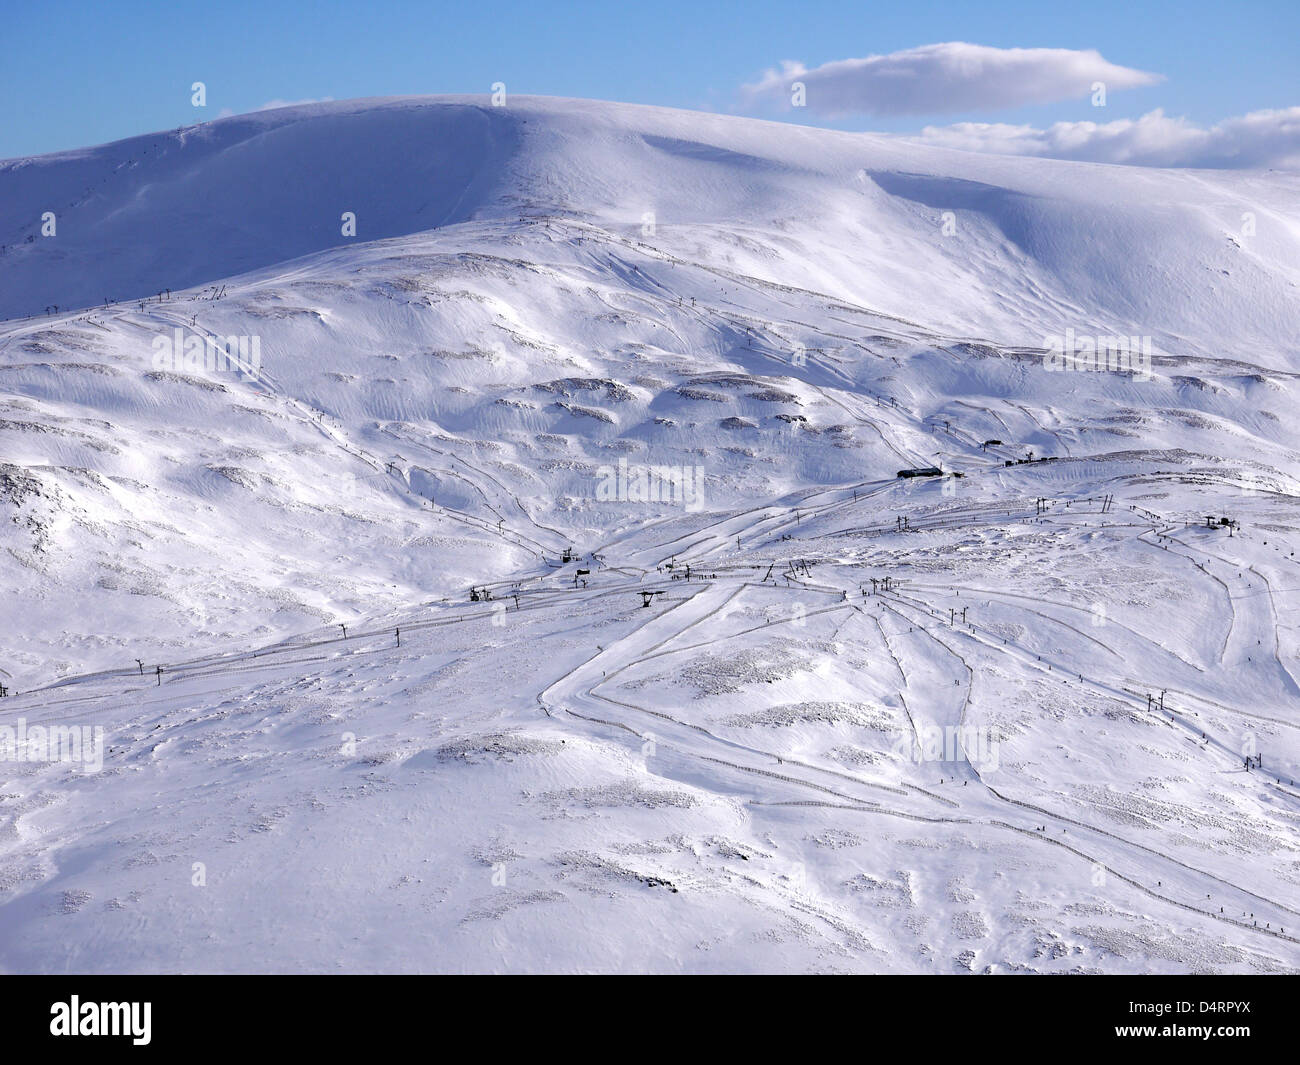 General view of Glenshee ski resort Sunny Side in Scotland Stock Photo